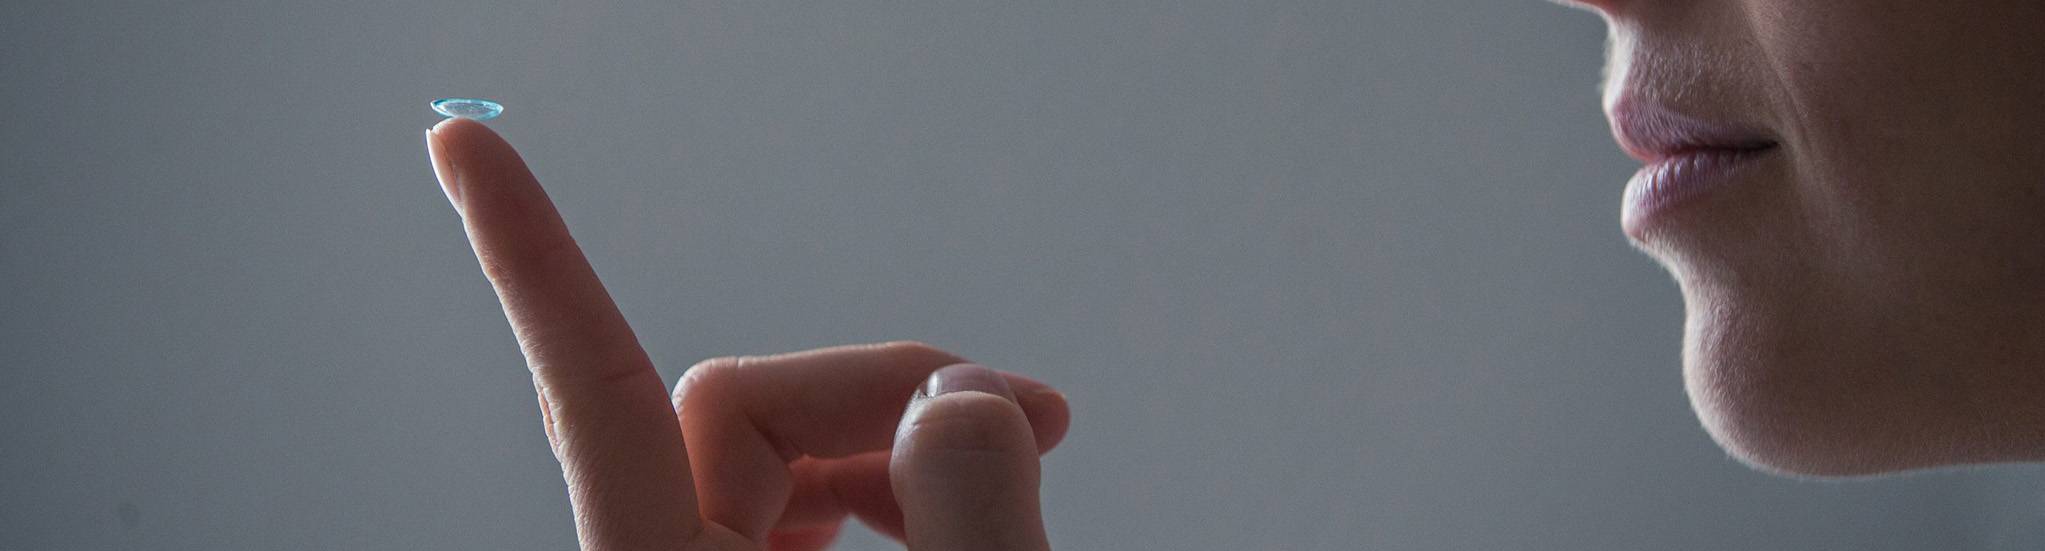 Kontaktlinse auf einem Zeigefinger 